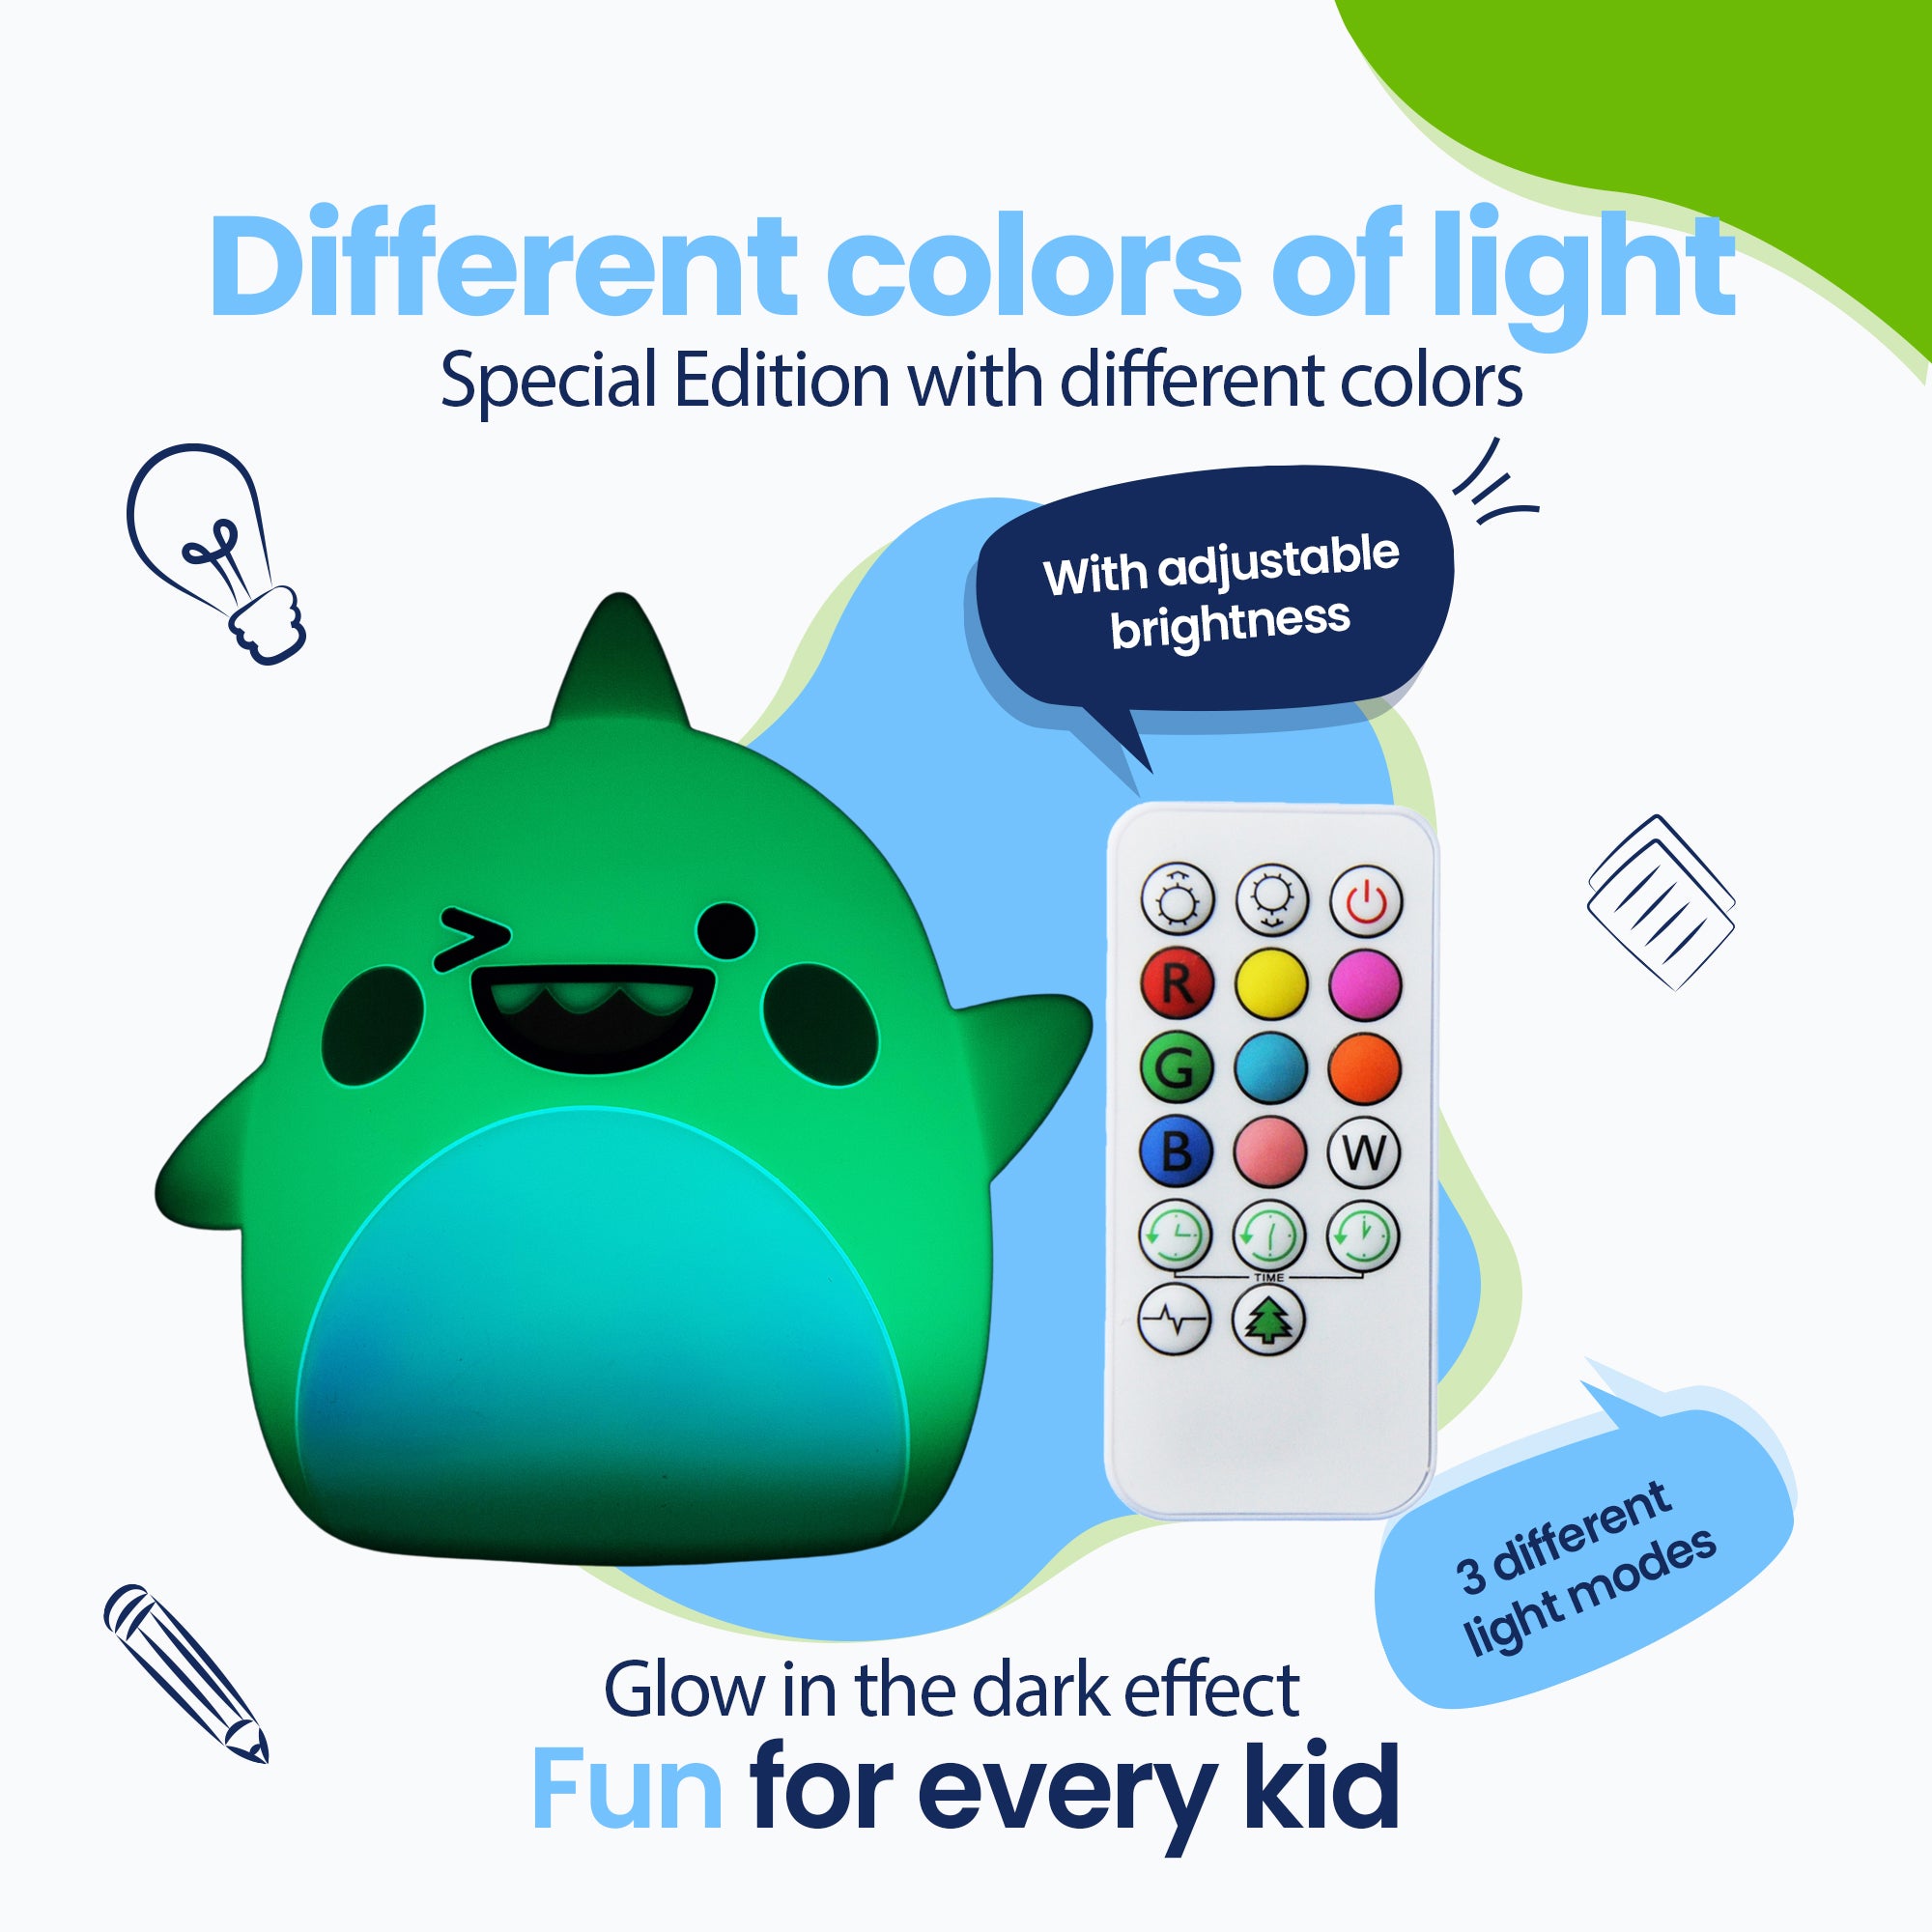 Diversi colori di luce - Edizione speciale con diversi colori - Effetto Glow in the Dark - 3 diverse spiagge luminose - Divertimento per ogni bambino